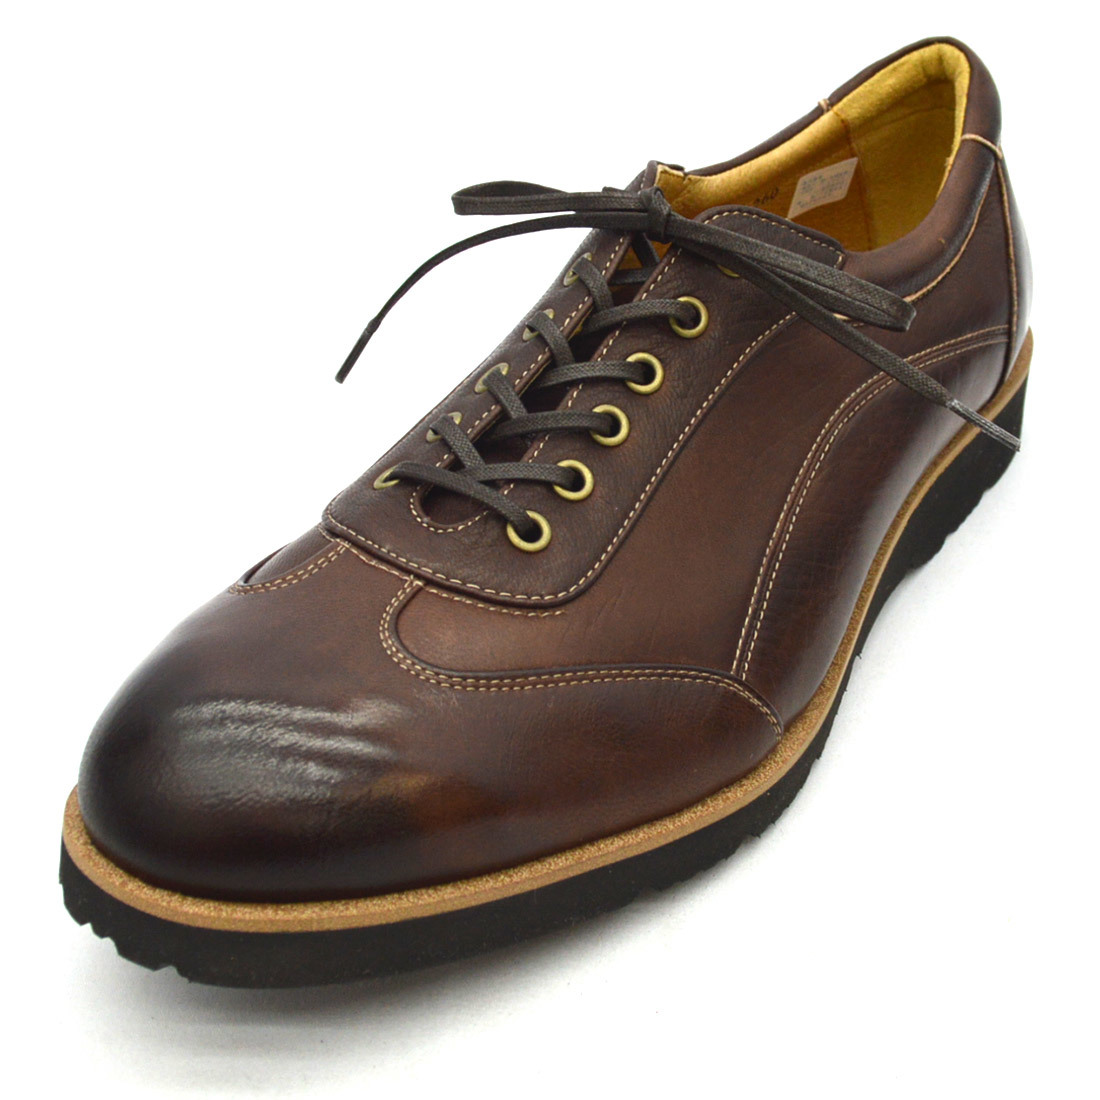 ^YAMATOism Yamato izm casual shoes YA-3301 deer leather DeerSkin leather shoes black Black black 26.5cm (0910010338-bk-s265)